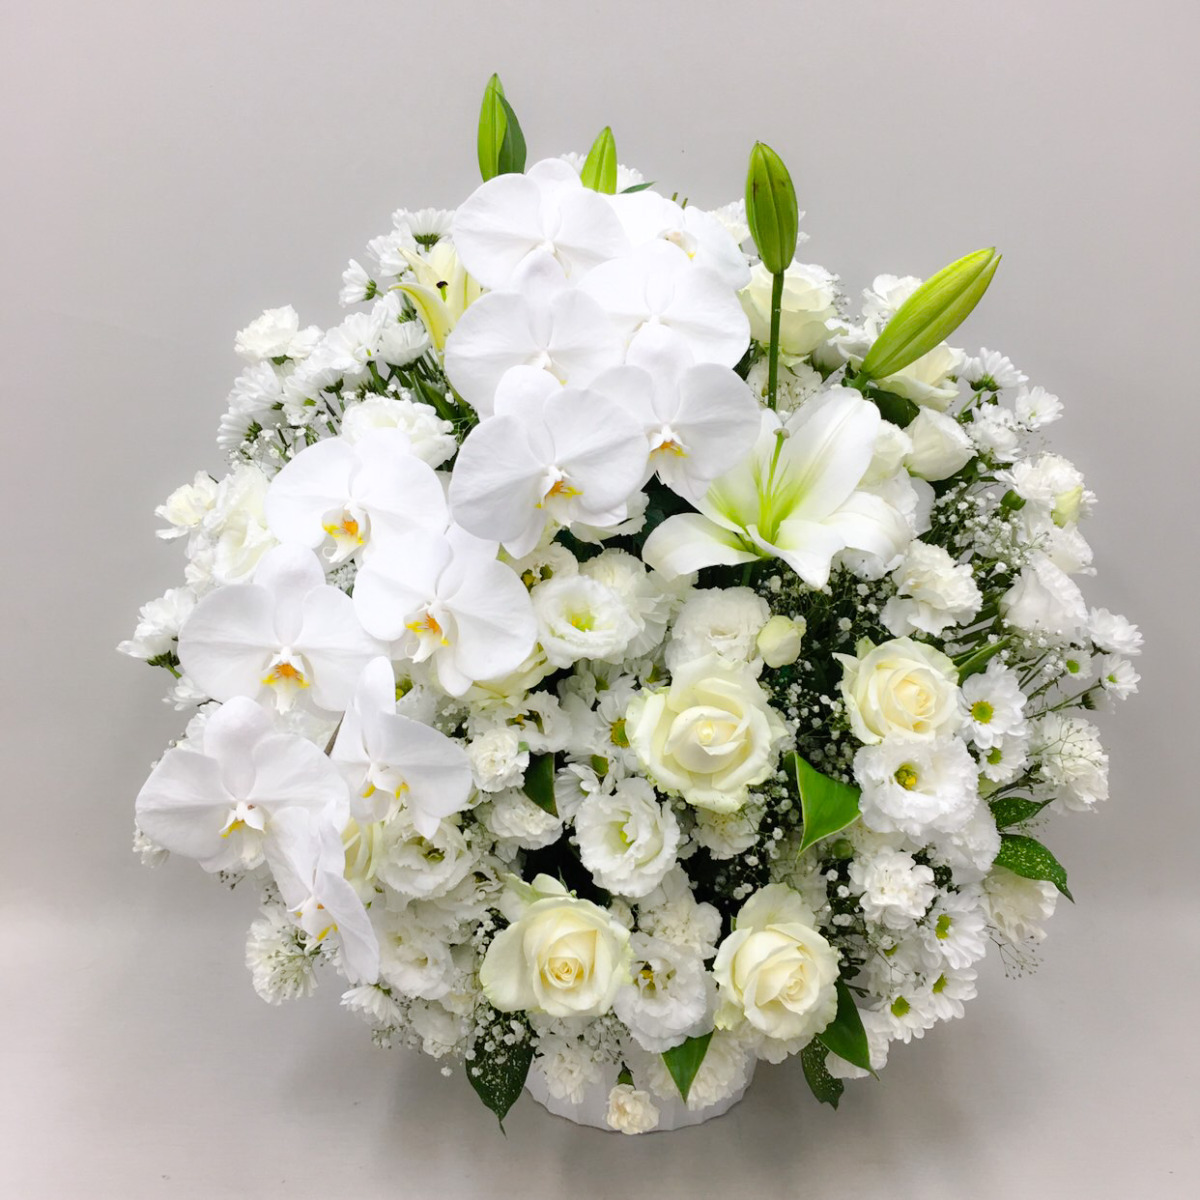 【供花】胡蝶蘭入り白バラのスフェアアレンジメント（H75）【送料無料】